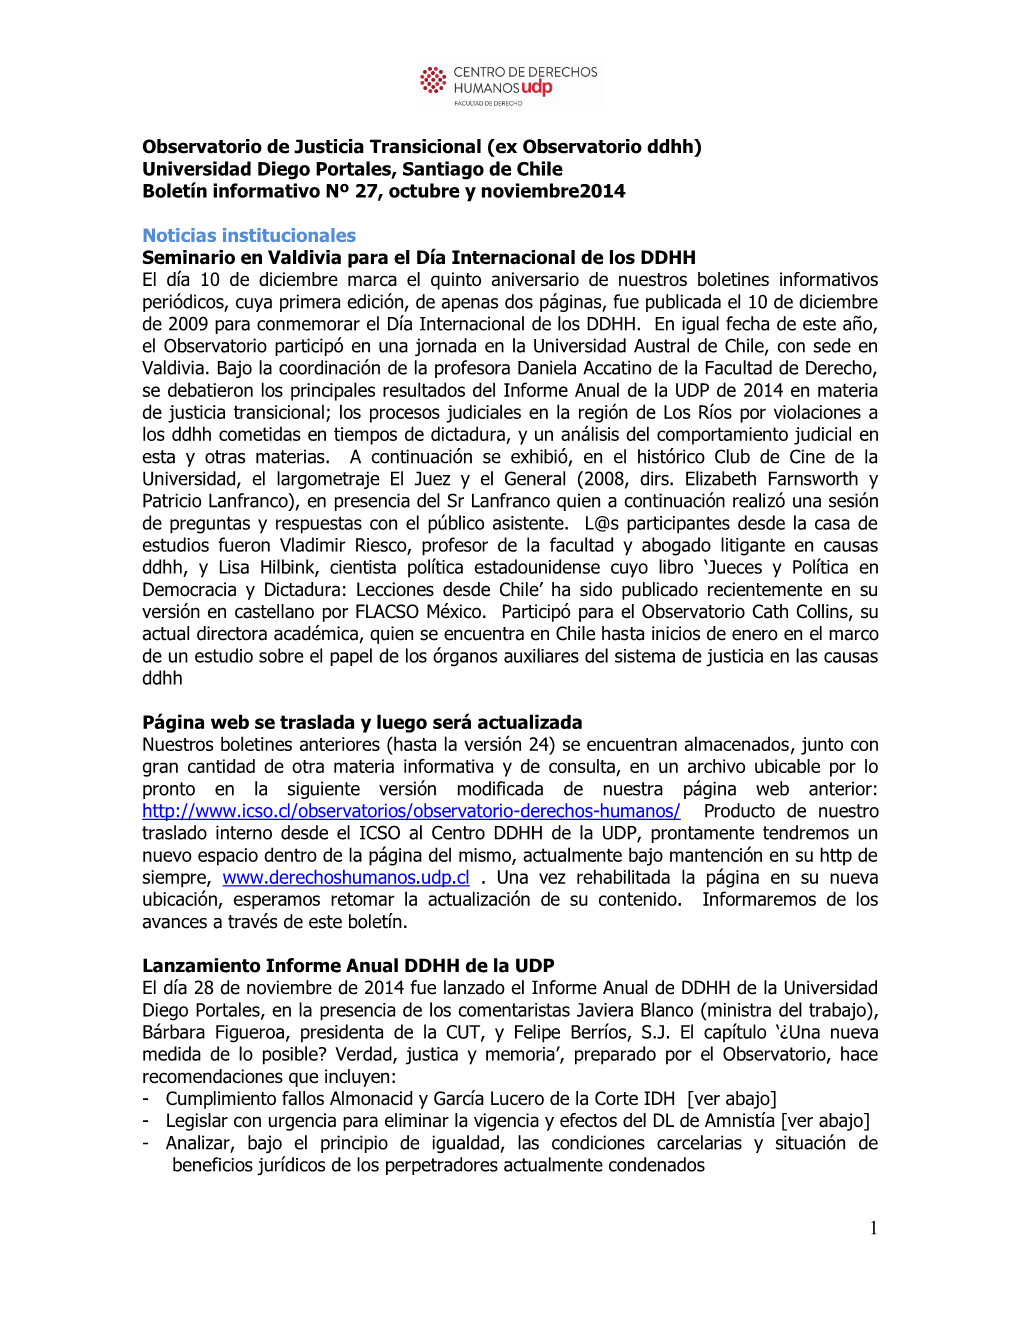 Universidad Diego Portales, Santiago De Chile Boletín Informativo Nº 27, Octubre Y Noviembre2014